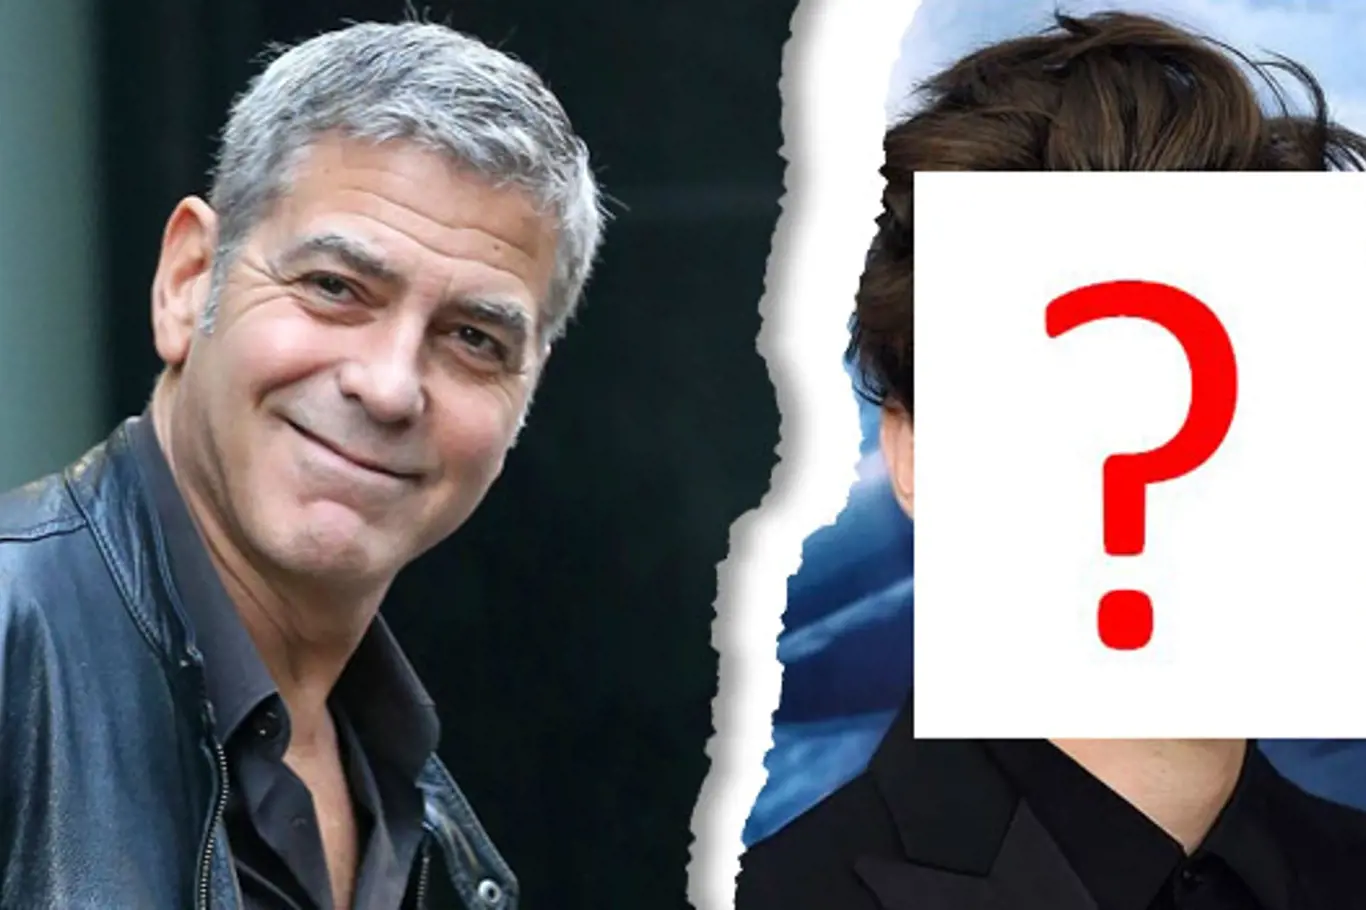 George Clooney už NENÍ NEJPŘITAŽLIVĚJŠÍ muž na světě! Z trůnu ho SESADIL CUCÁK!